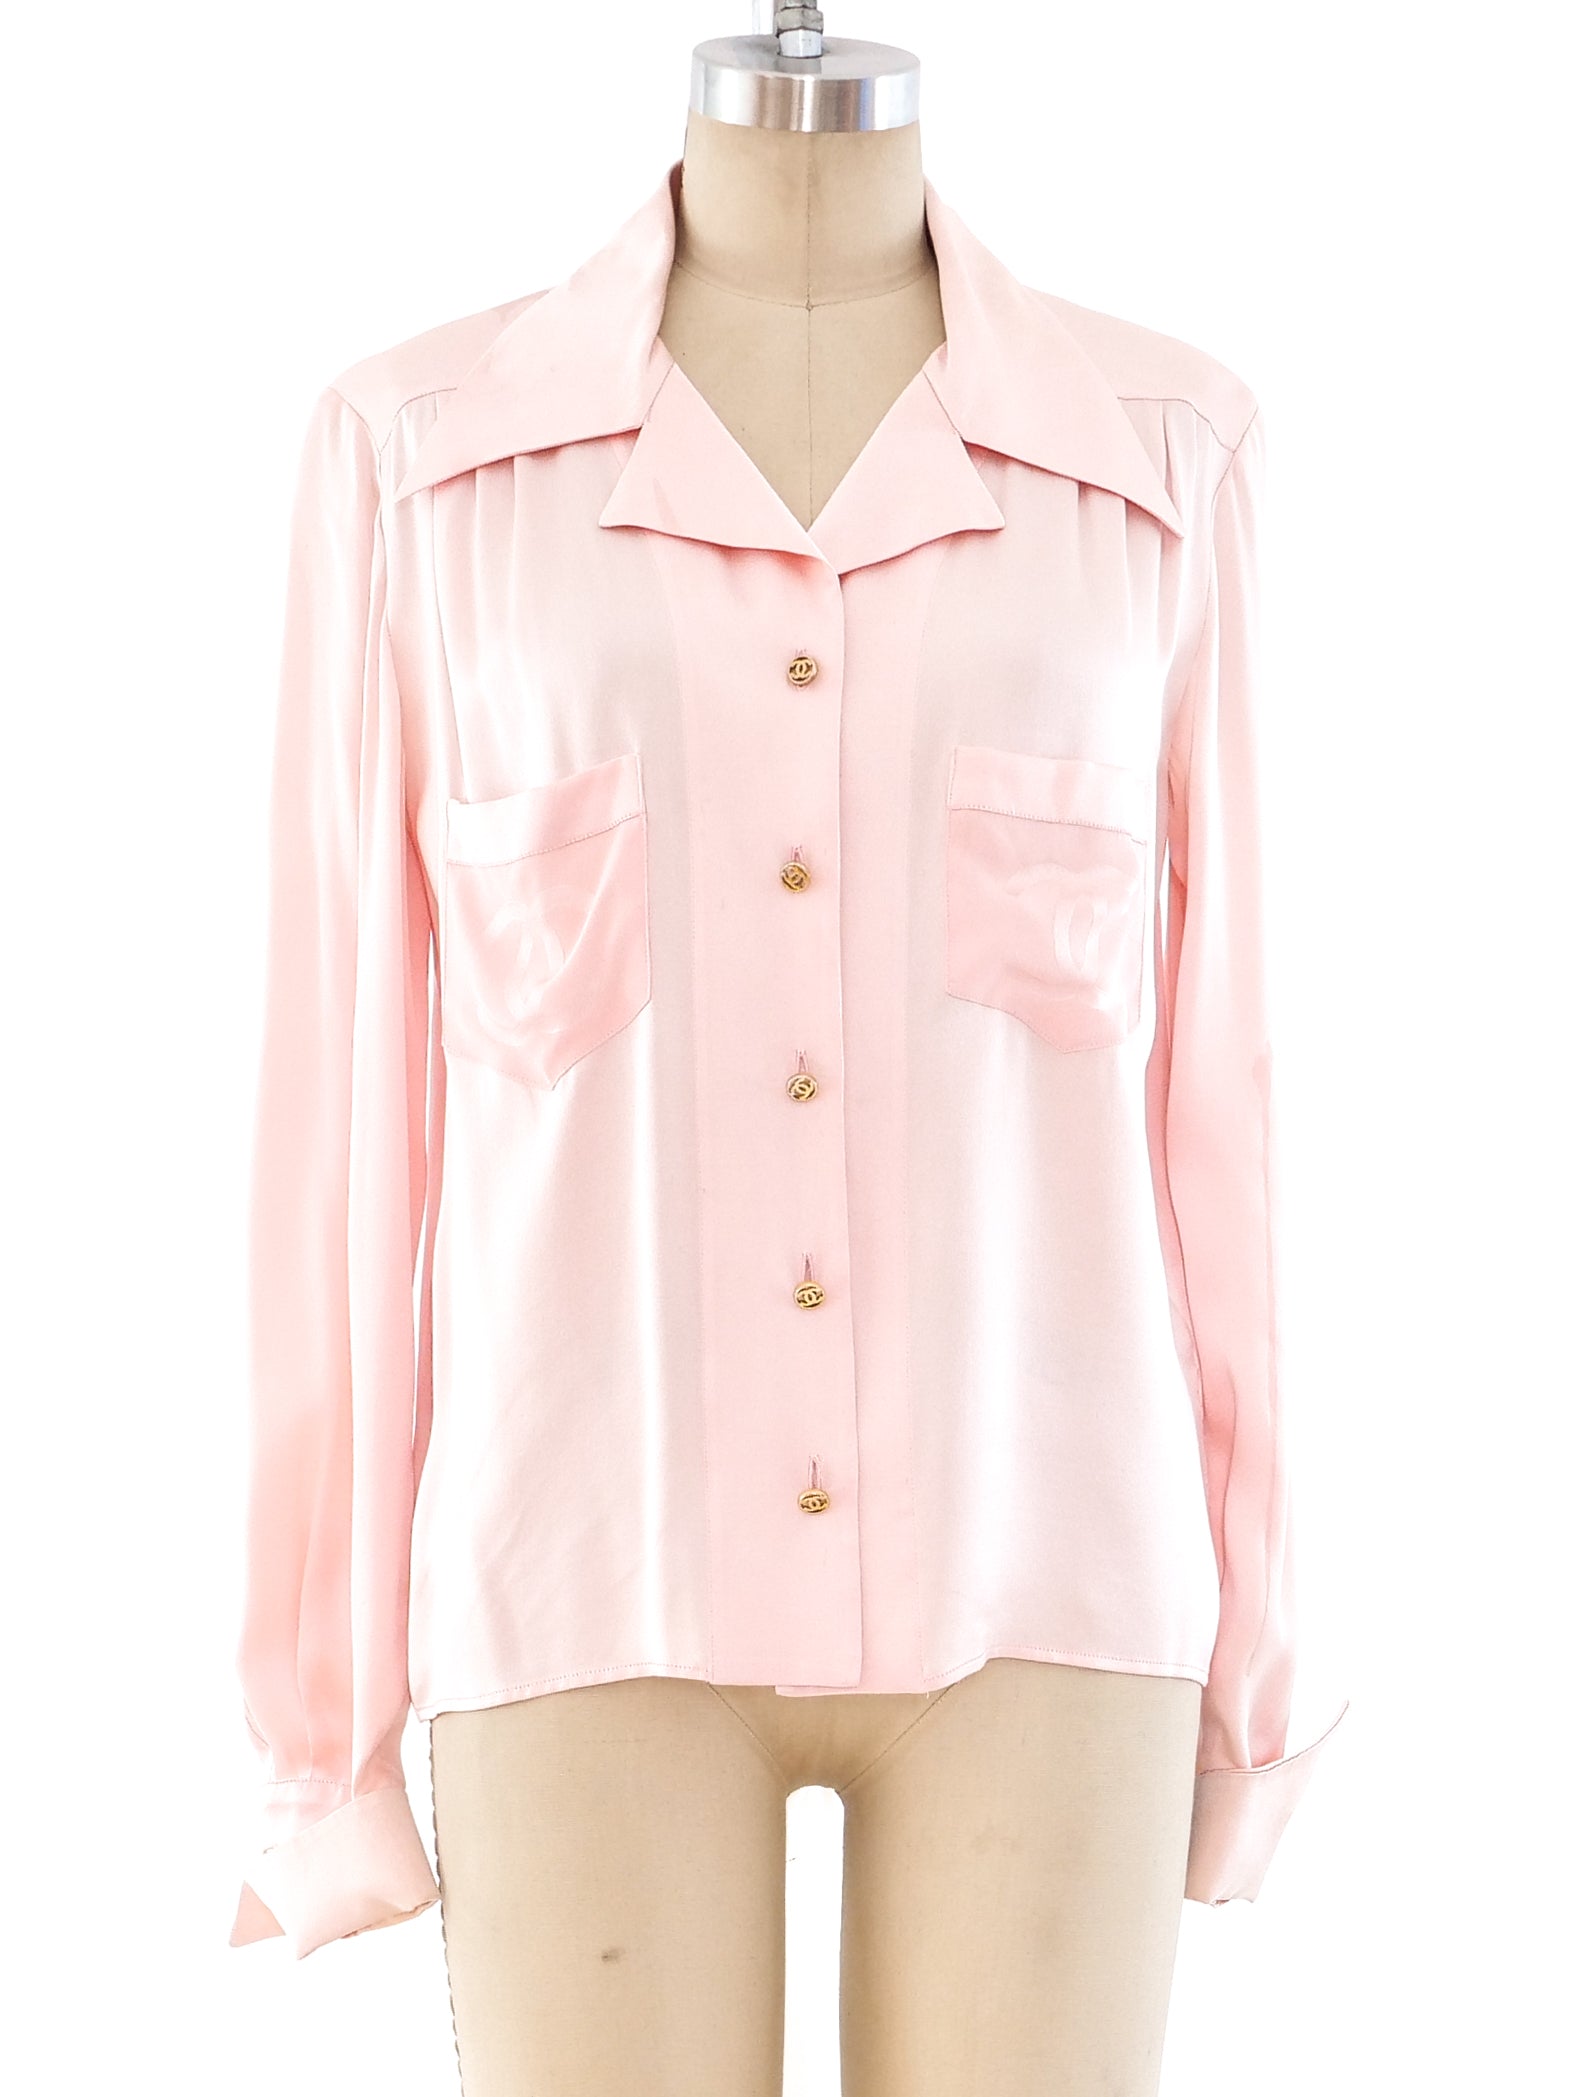 SS 1997 Chanel Pink Boucle Vintage Blazer Jacket – Modig